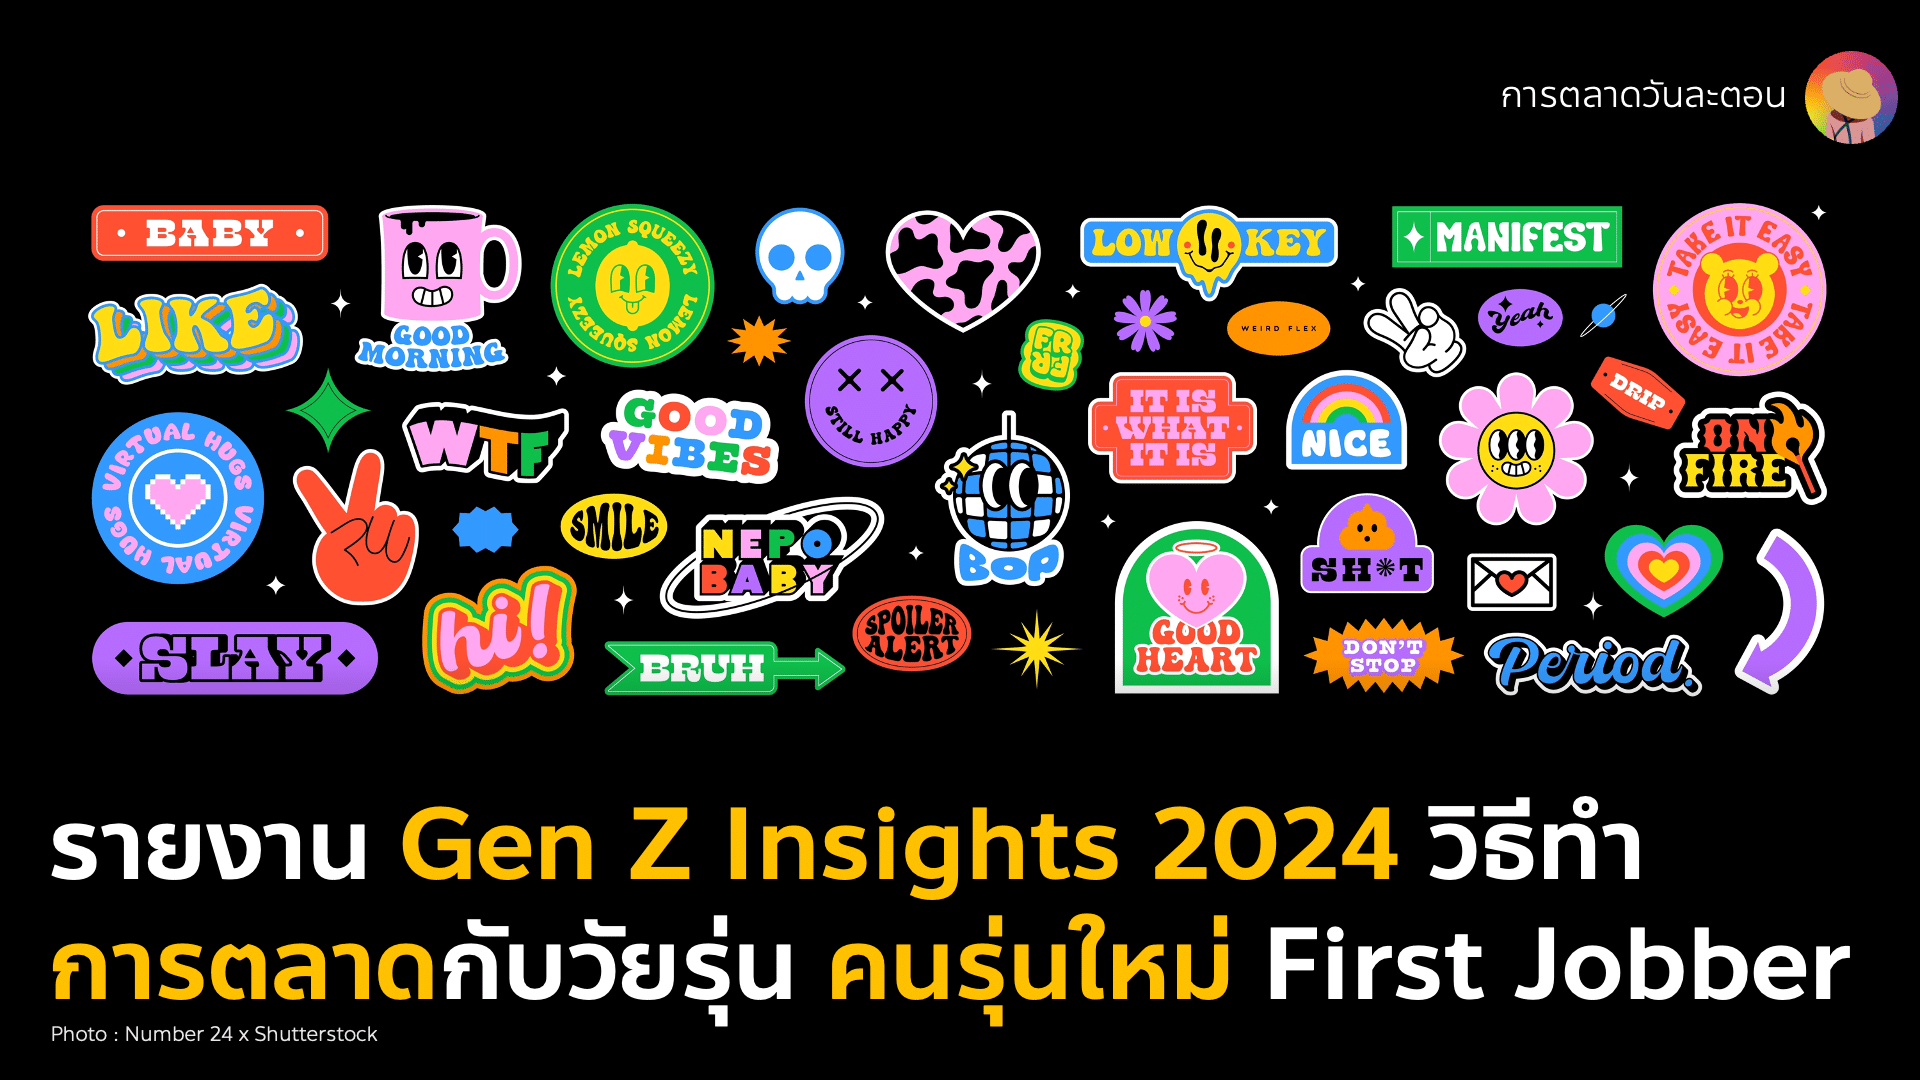 Gen Z Insights 2024 วิธีทำการตลาดกลุ่มวัยรุ่น คนรุ่นใหม่ วัยเริ่มทำงาน